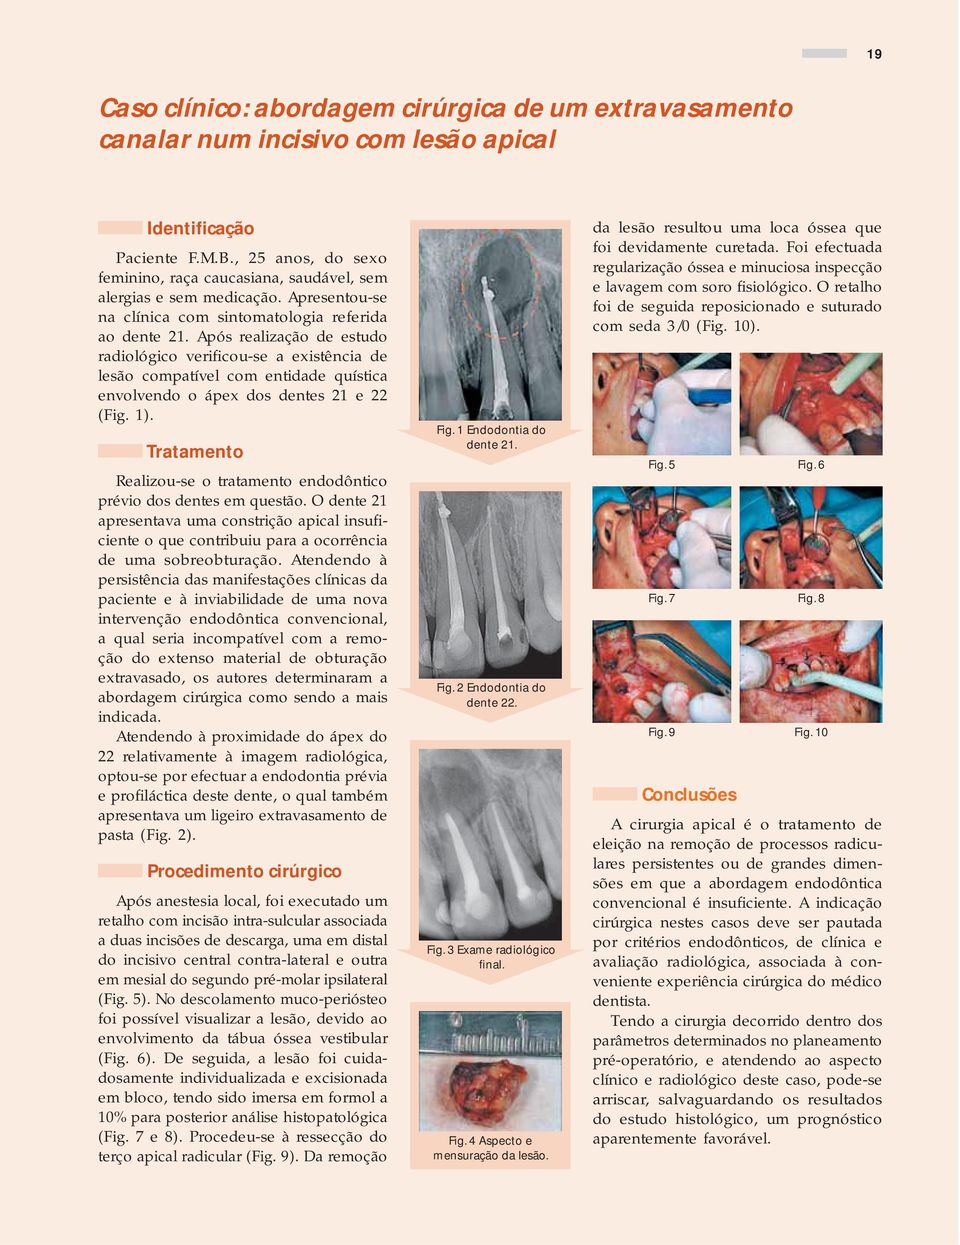 Após realização de estudo radiológico verificou-se a existência de lesão compatível com entidade quística envolvendo o ápex dos dentes 21 e 22 (Fig. 1).